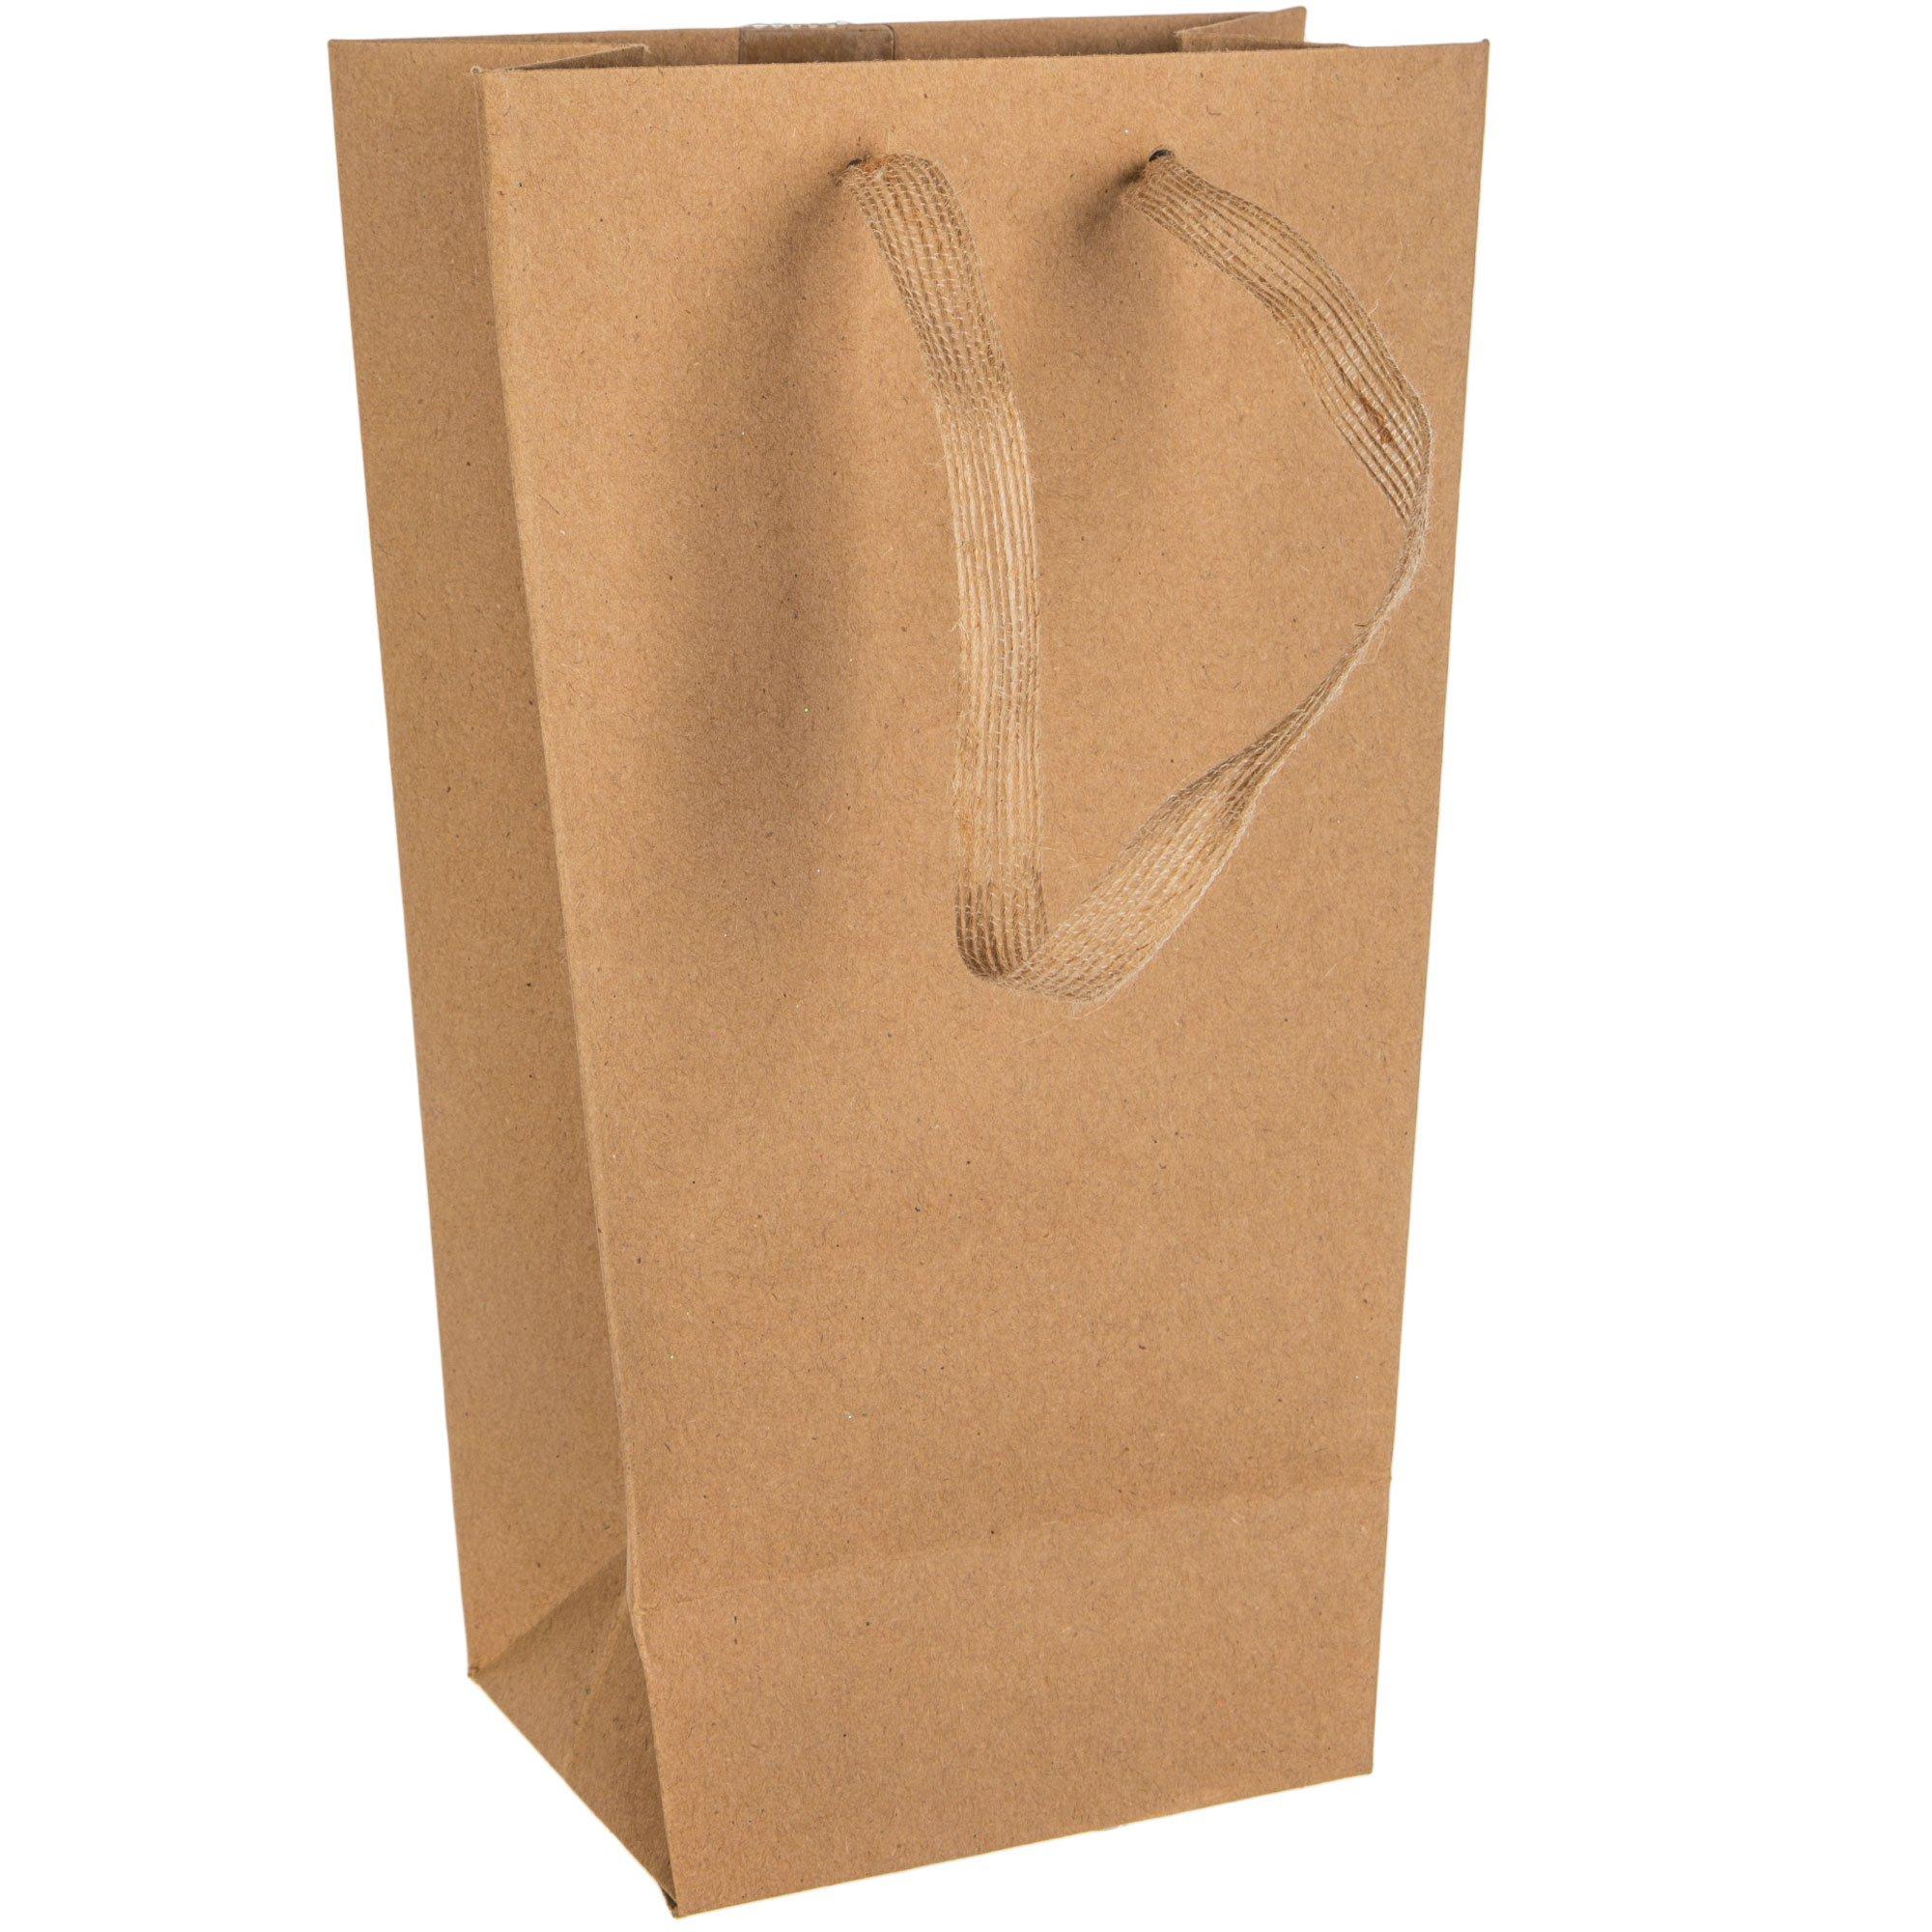 Kraft & Gold Foil Gift Bags, Hobby Lobby